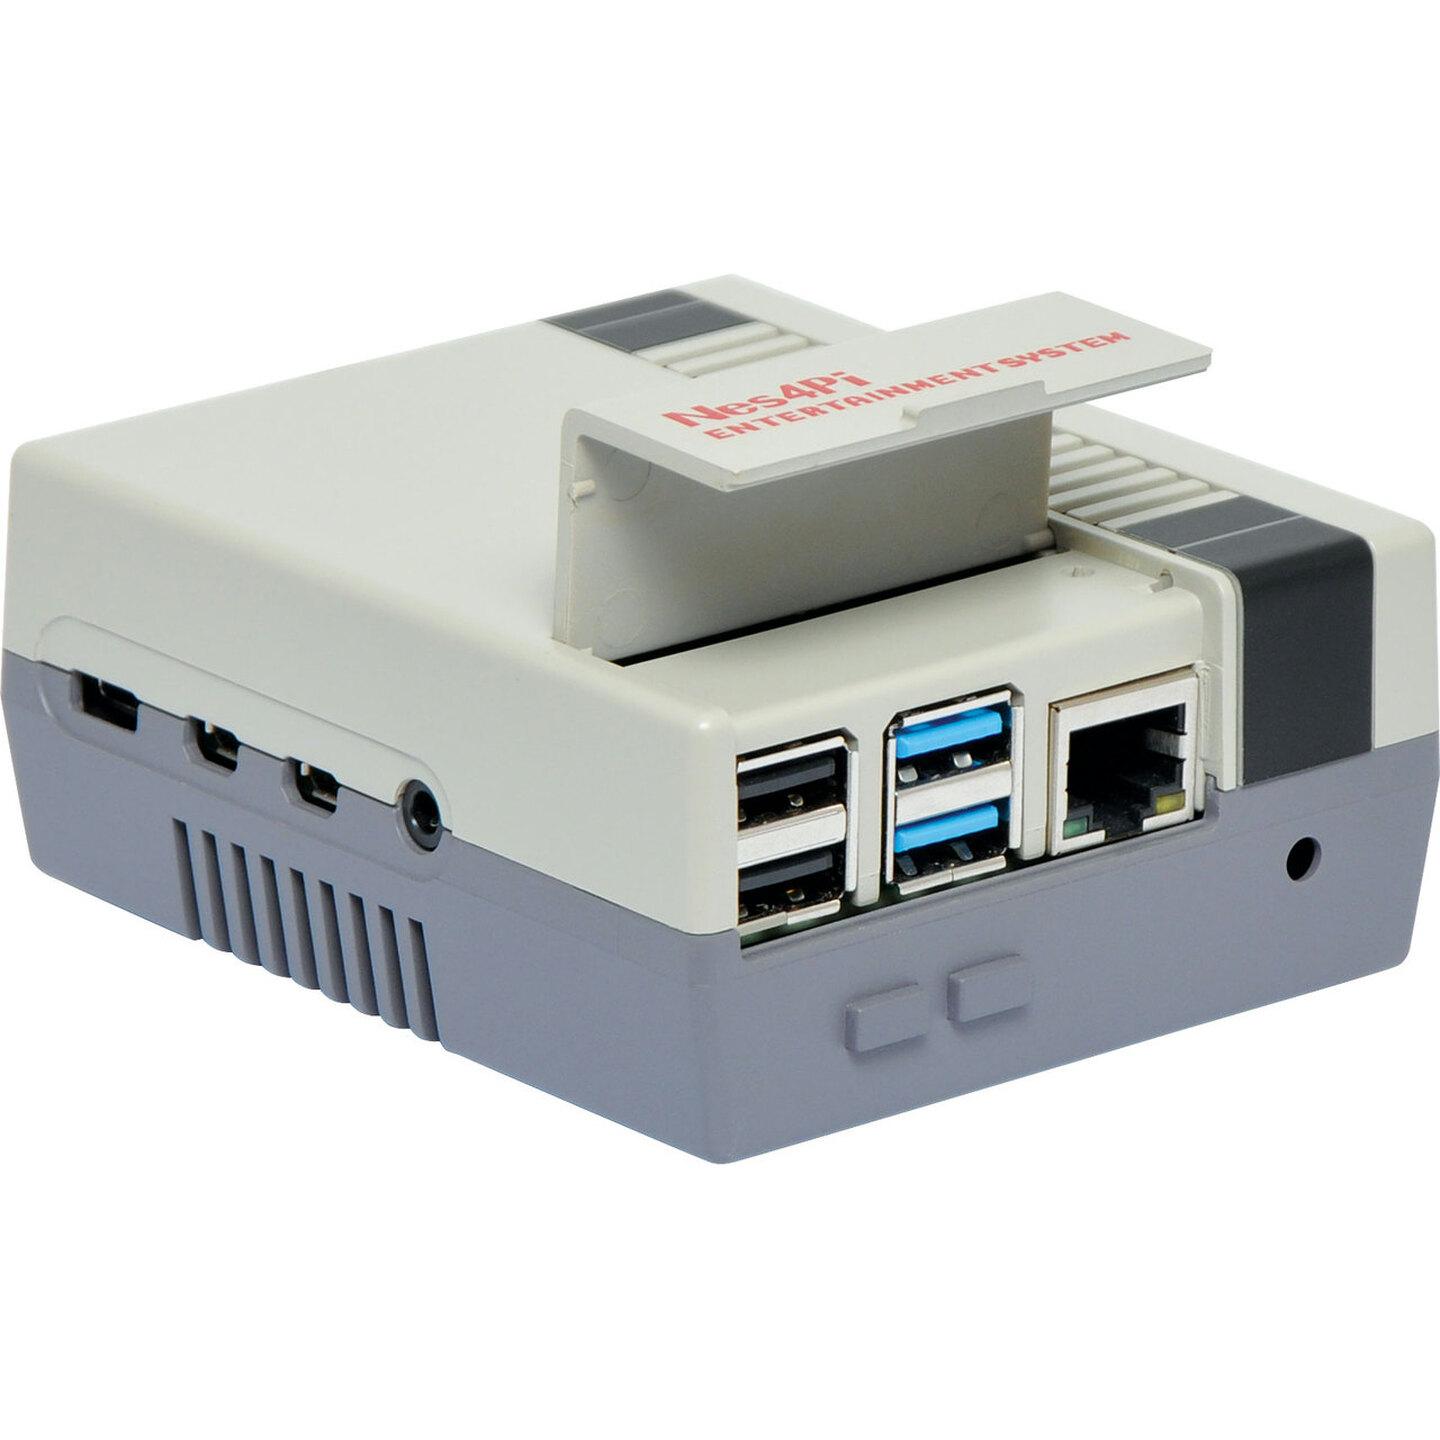 Duinotech Retro NES Gaming Case for Raspberry Pi 4